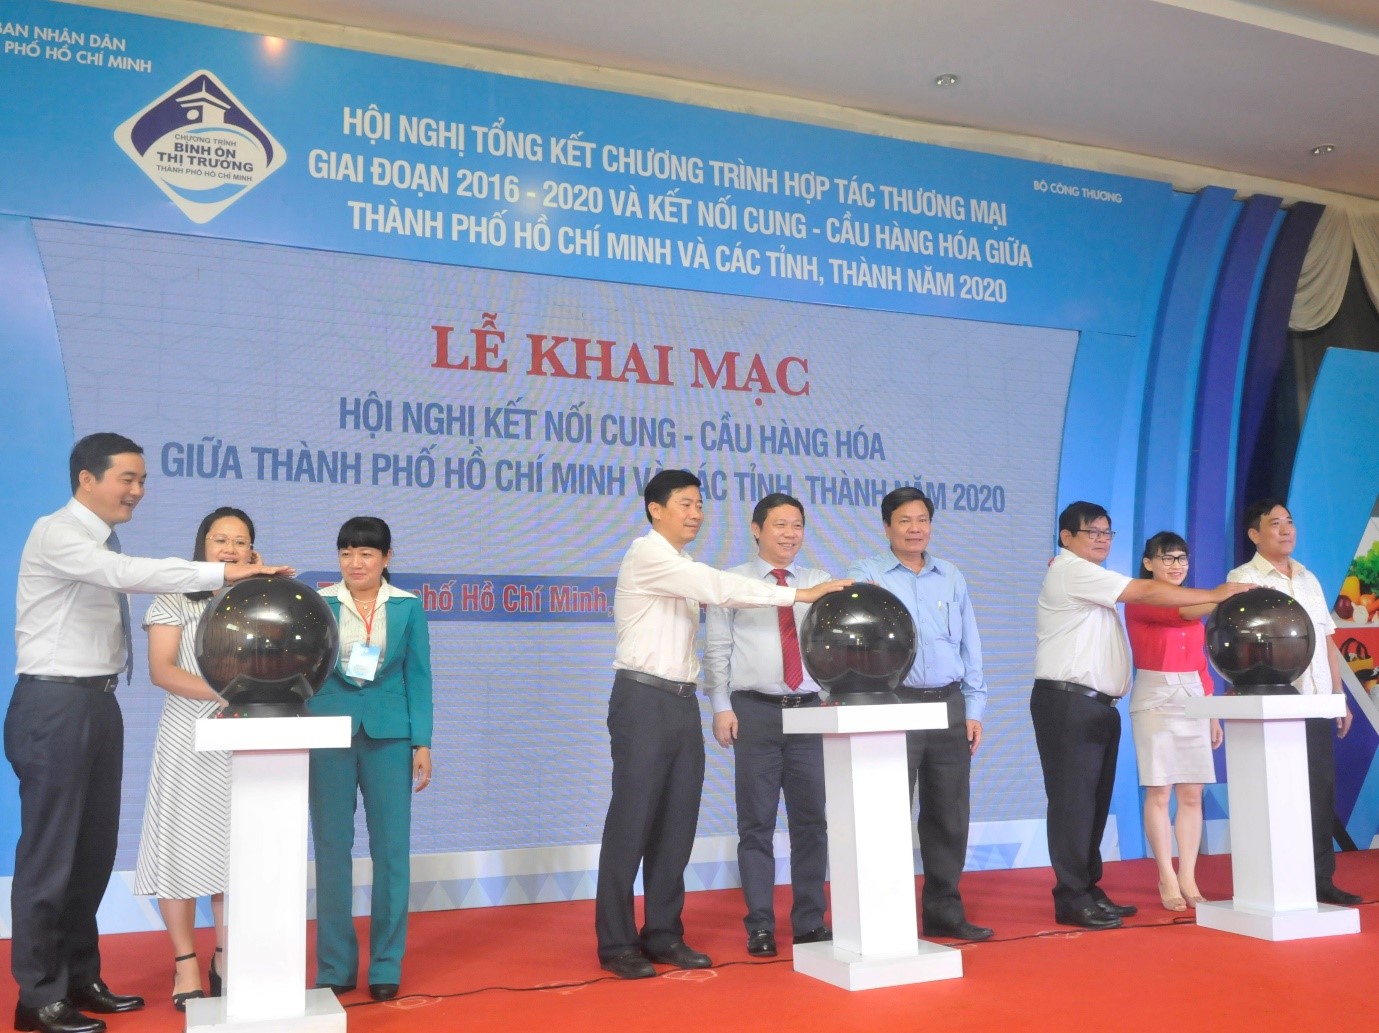 Bình Dương tham gia Hội nghị Kết nối cung – cầu hàng hóa giữa Thành phố Hồ Chí Minh và các tỉnh, thành phố năm 2020